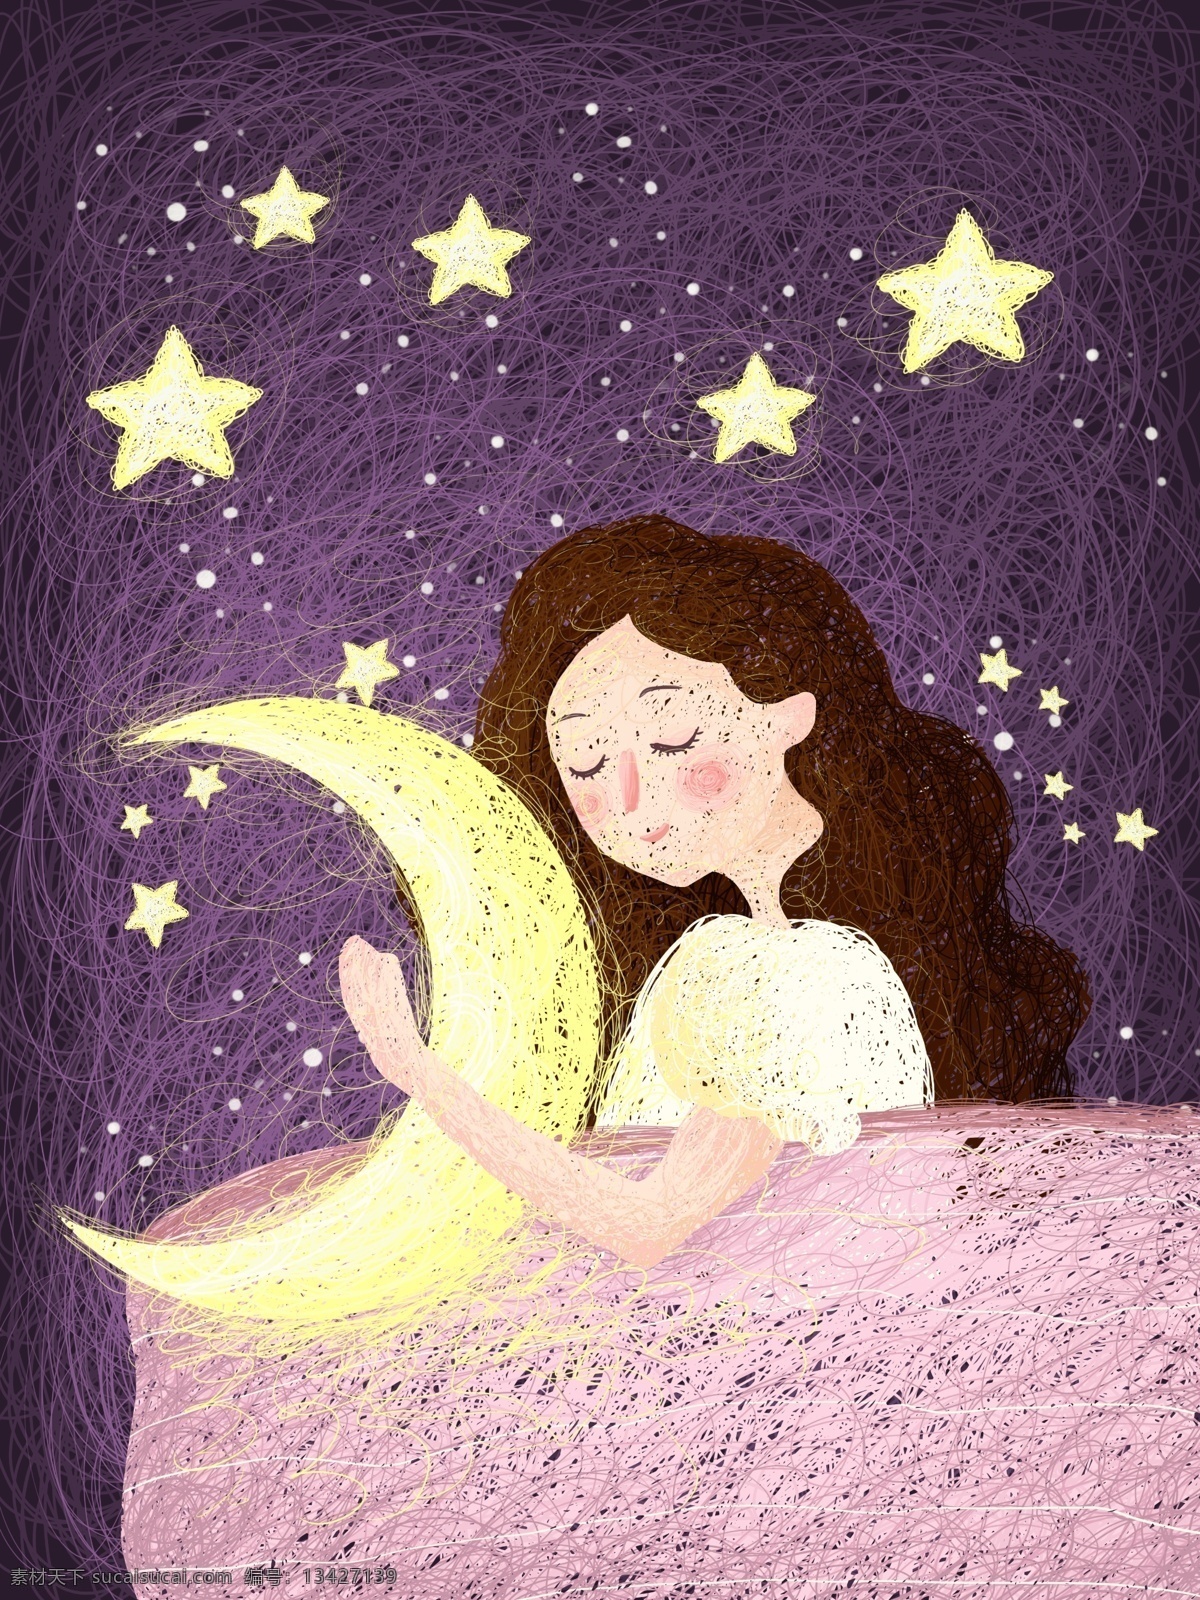 晚安 世界 女孩 线圈 画 治愈 系 月亮 星星 星空 卡通 紫色 晚安世界 线圈画 治愈系 梦境 被子 睡觉 少女